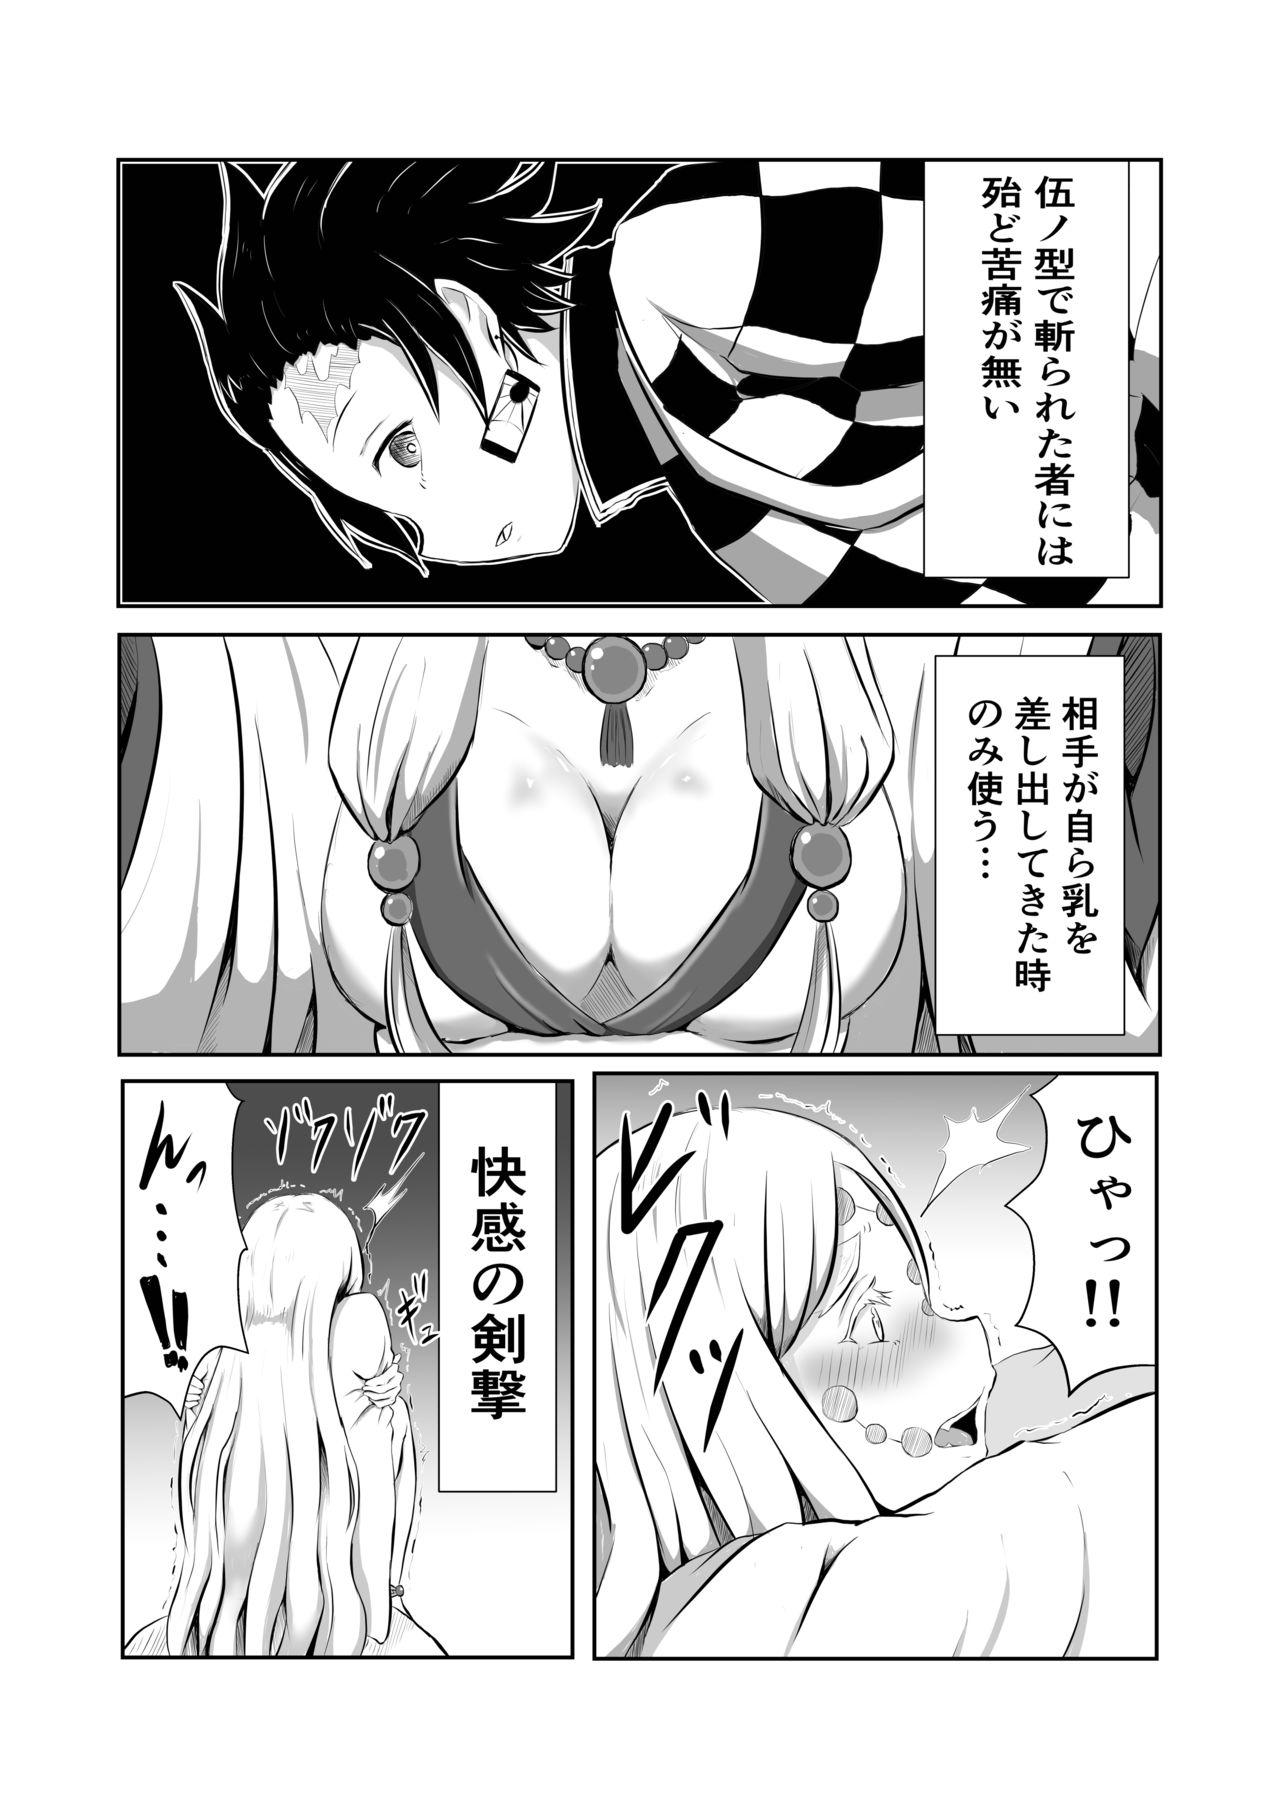 Liveshow Hinokami Sex. - Kimetsu no yaiba | demon slayer Dress - Page 4